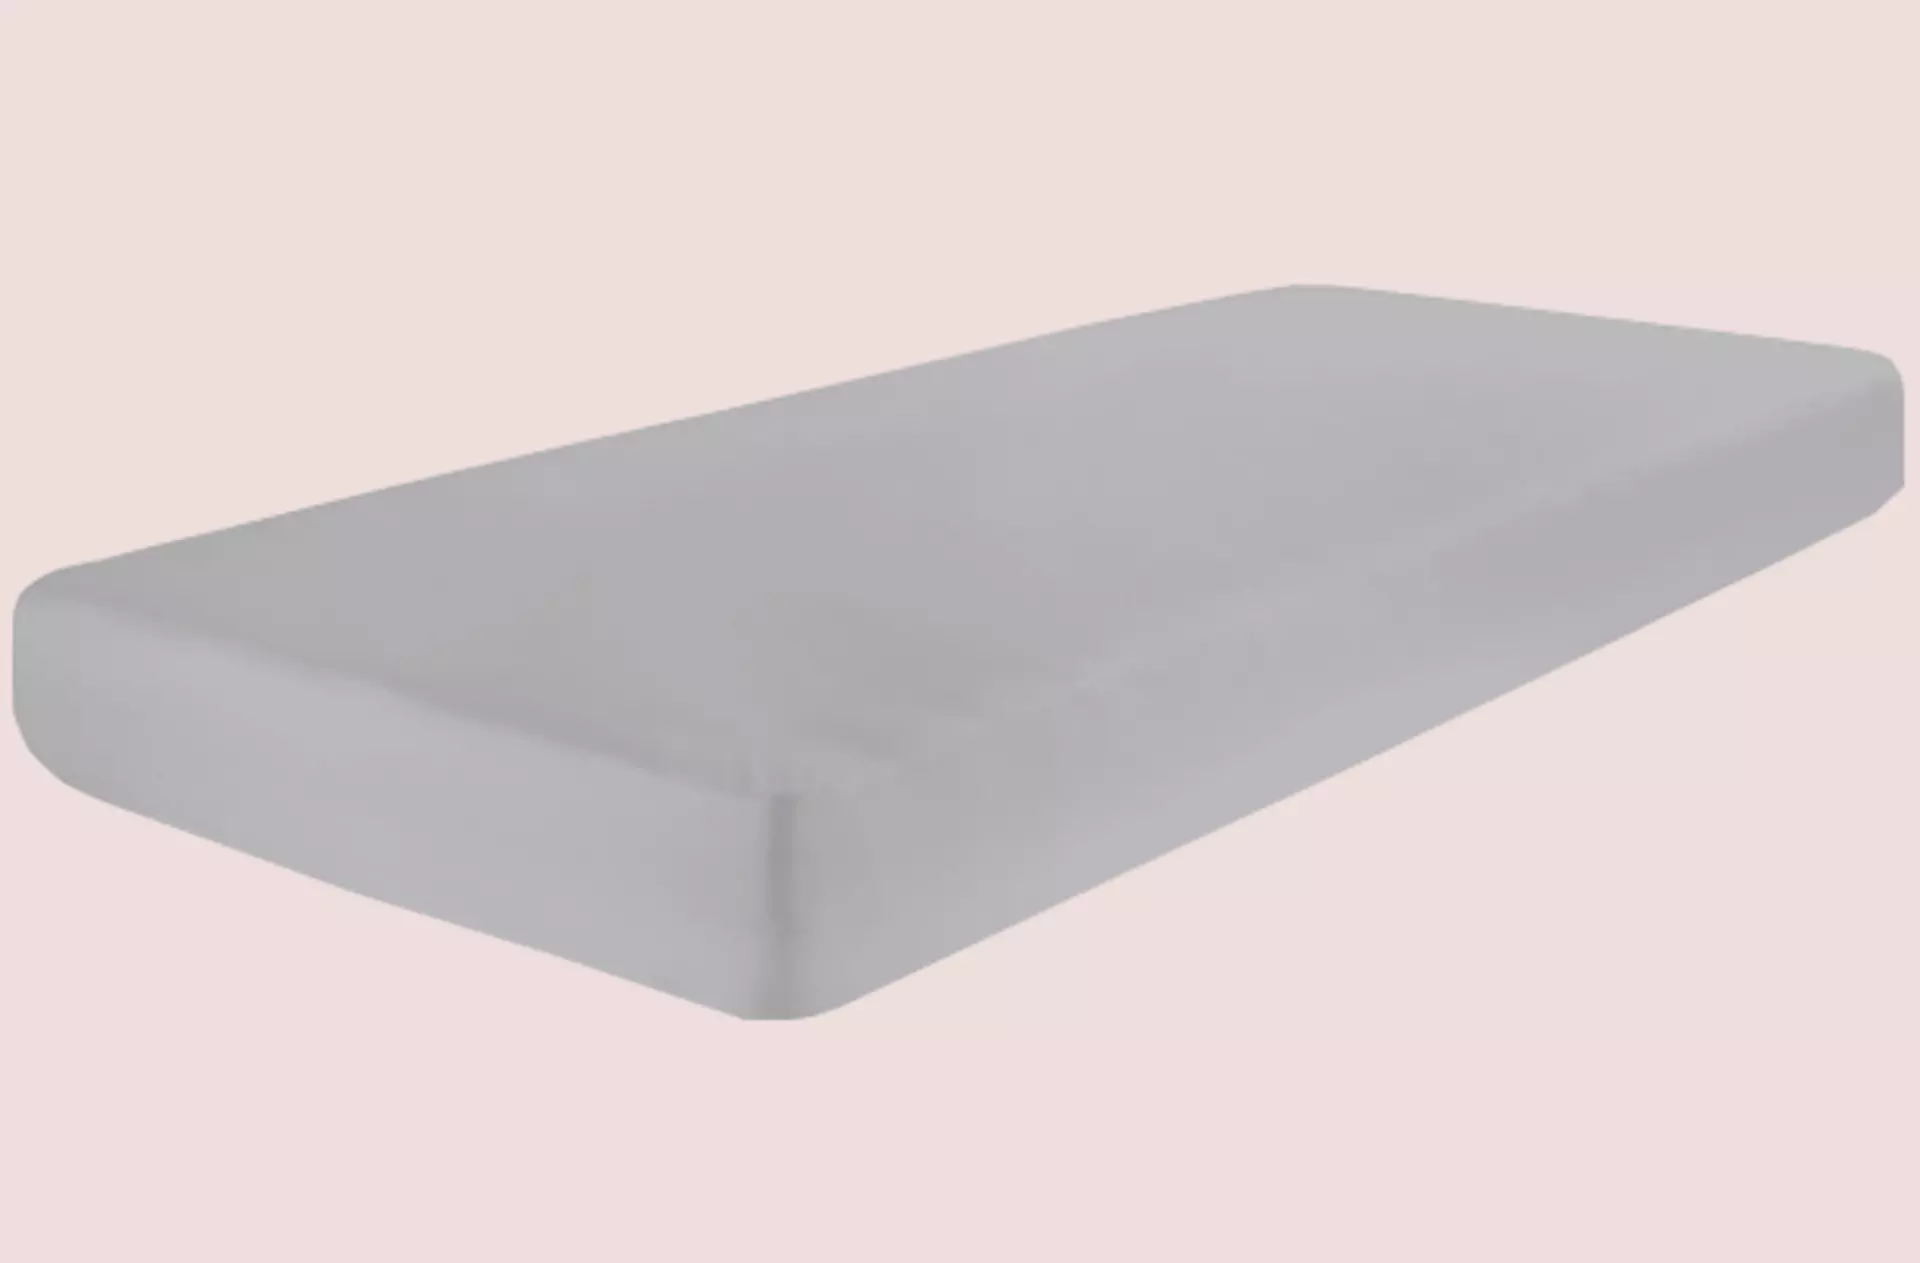 Passend zum Pastell-Look im Schlafzimmer: Bettlaken in hellem Grau